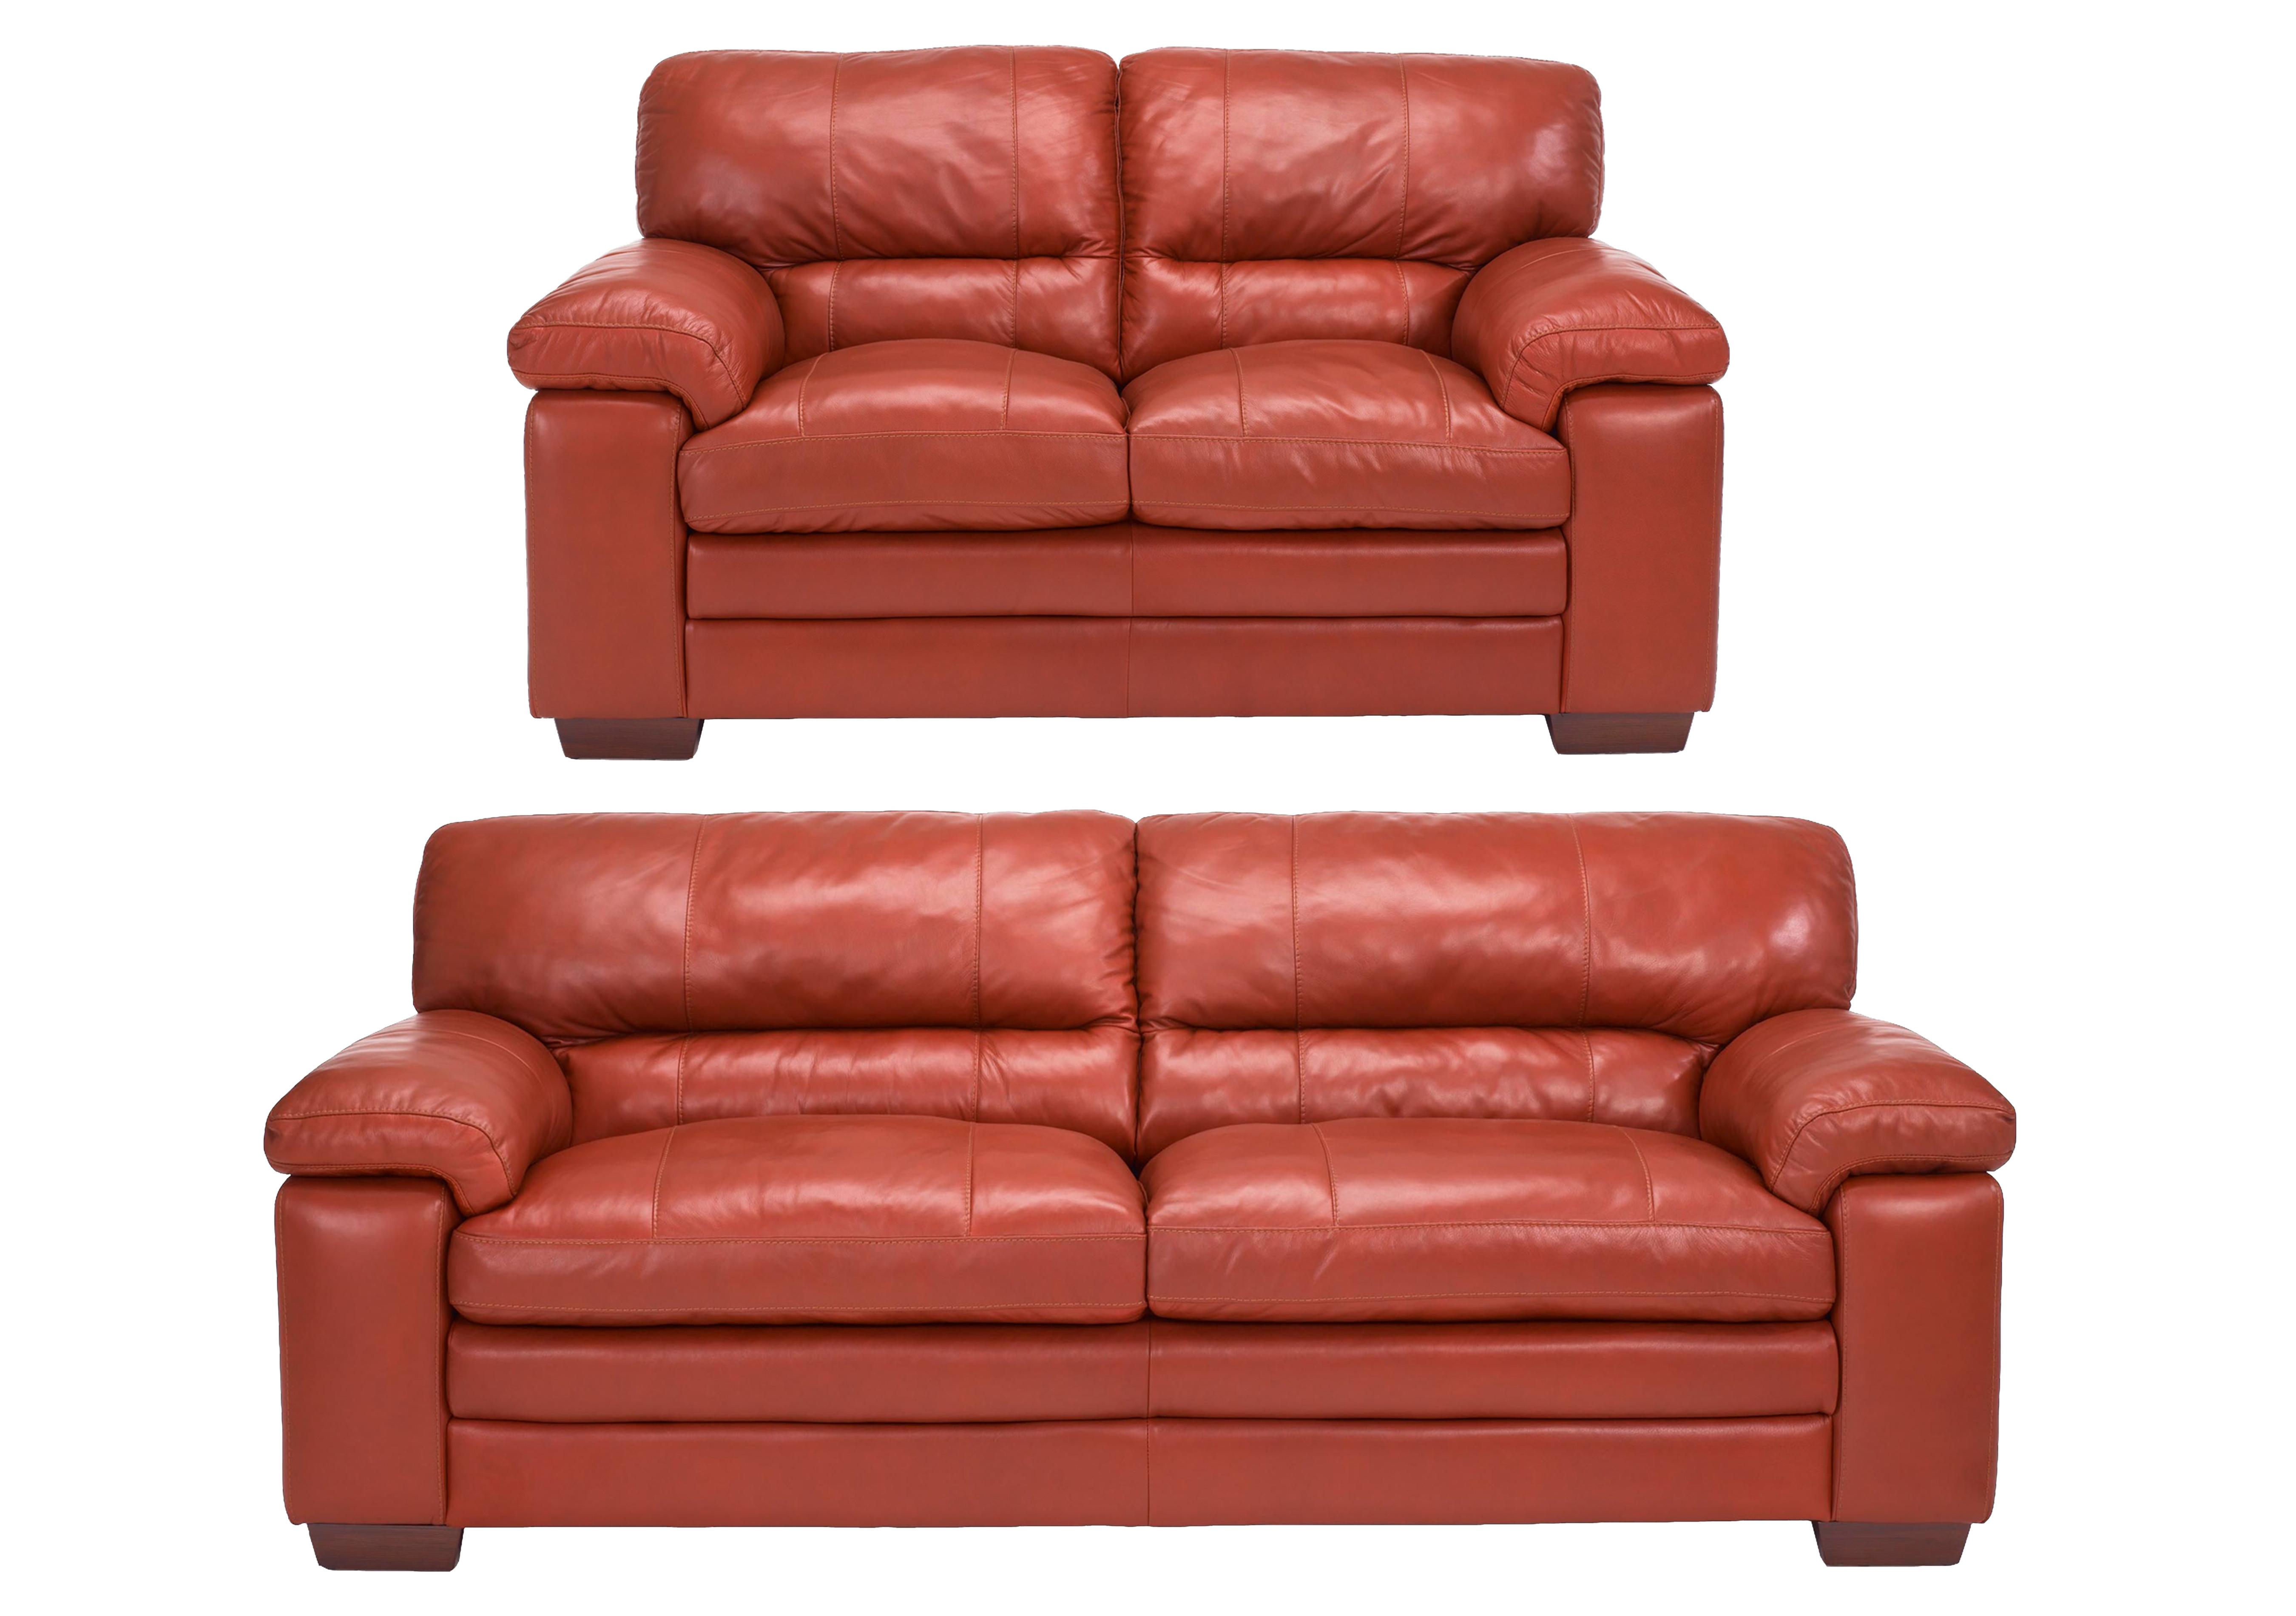 carolina leather recling sofa